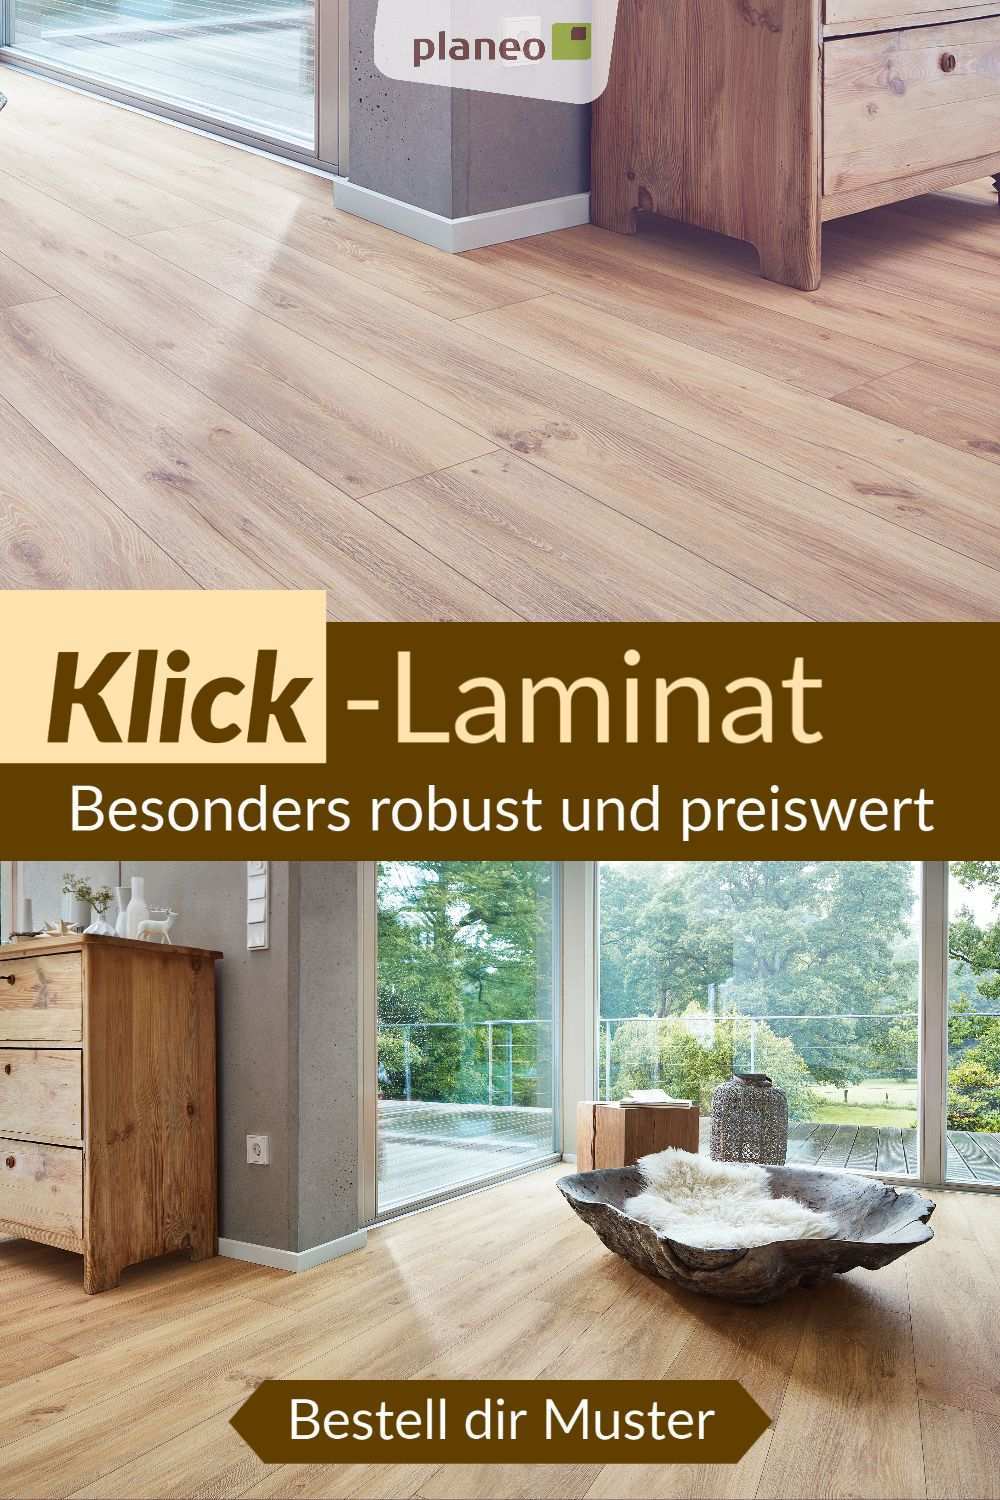 Laminat Laminatboden Zum Klicken Einfach Zu Verlegen In Eiche Grau Fliesenoptik Holzoptik In 2020 Laminat Laminatboden Klick Laminat